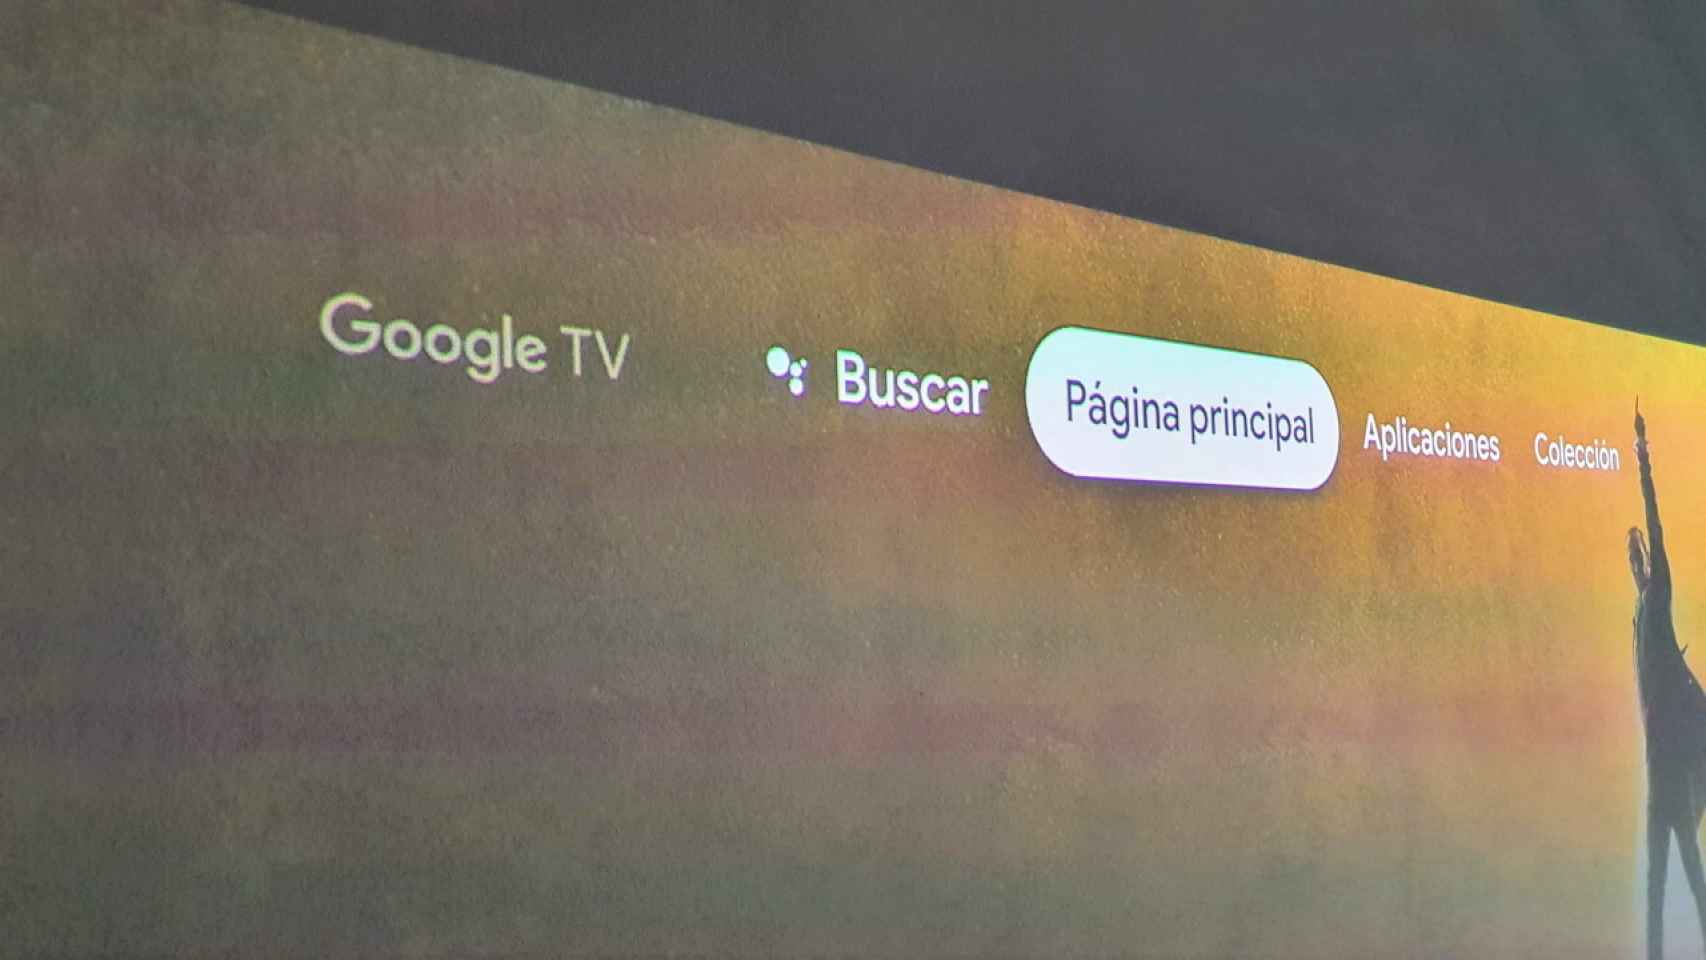 Google TV tendrá un modo básico para los que no quieran una smart TV